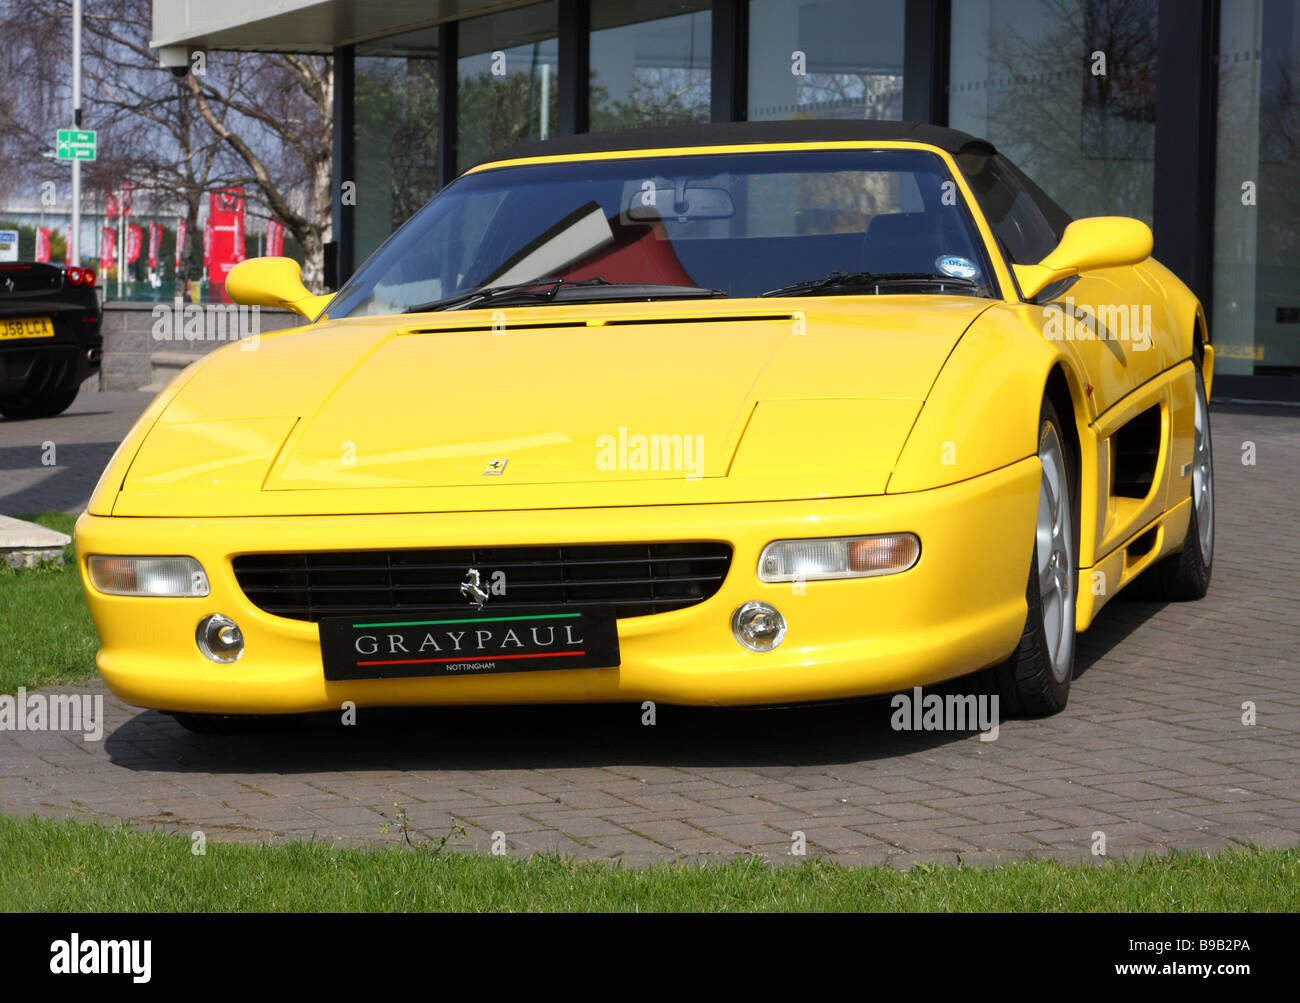 A Ferrari dealership in a U.K. city. Stock Photo